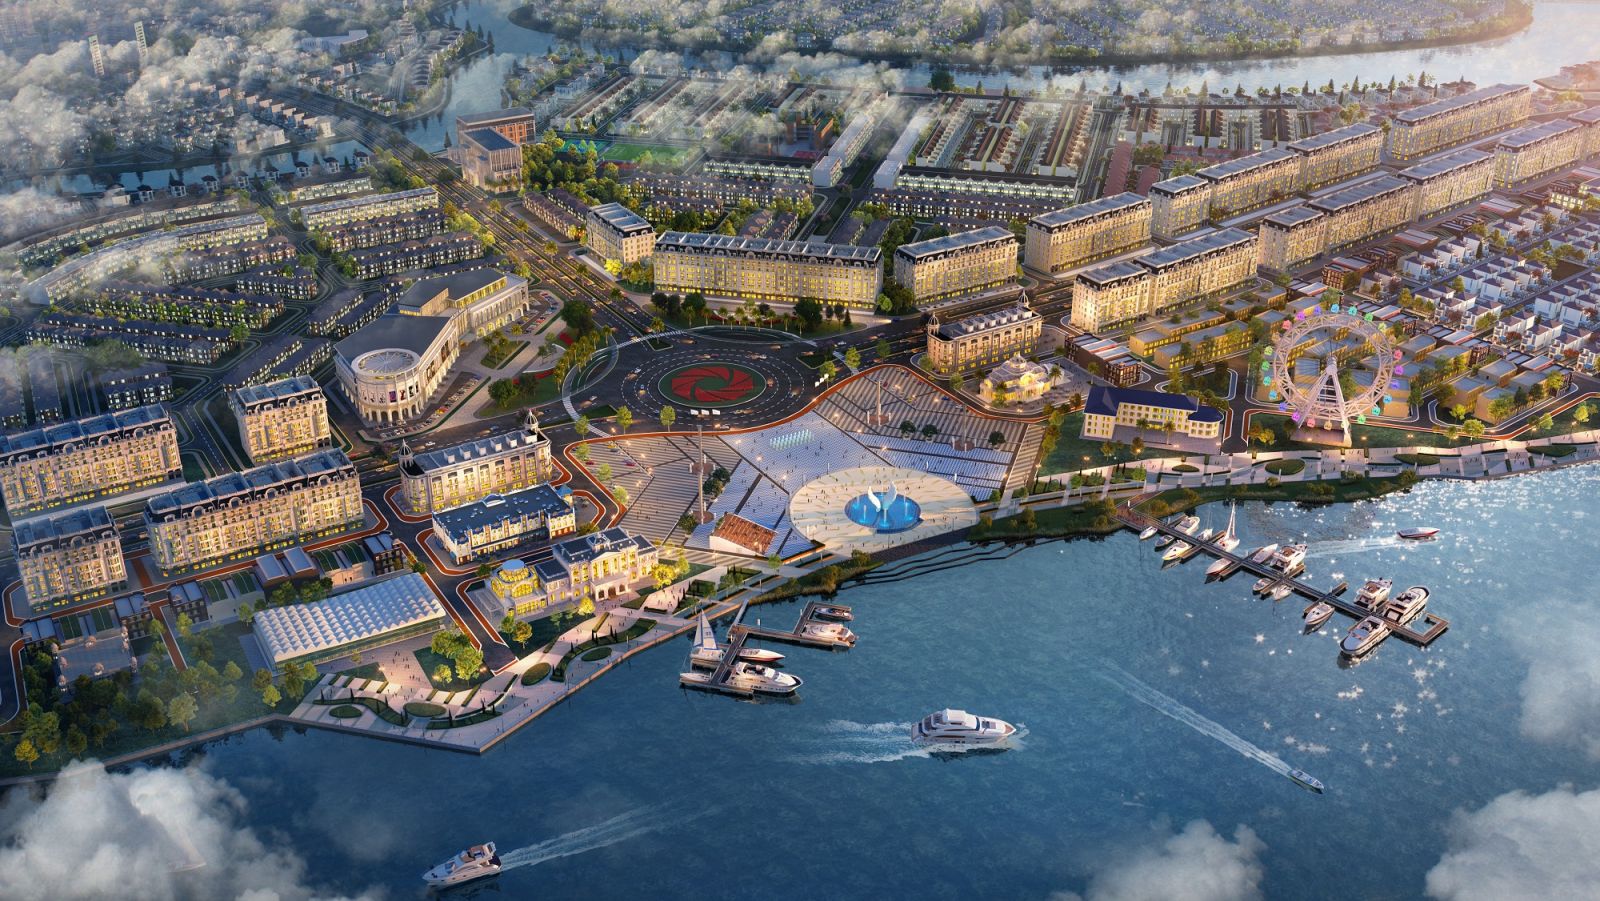 Tổ hợp quảng trường – bến du thuyền Aqua Marina tại Aqua City kỳ vọng không chỉ kiến tạo phong cách sống mới mà còn là điểm đến hàng đầu khu vực.